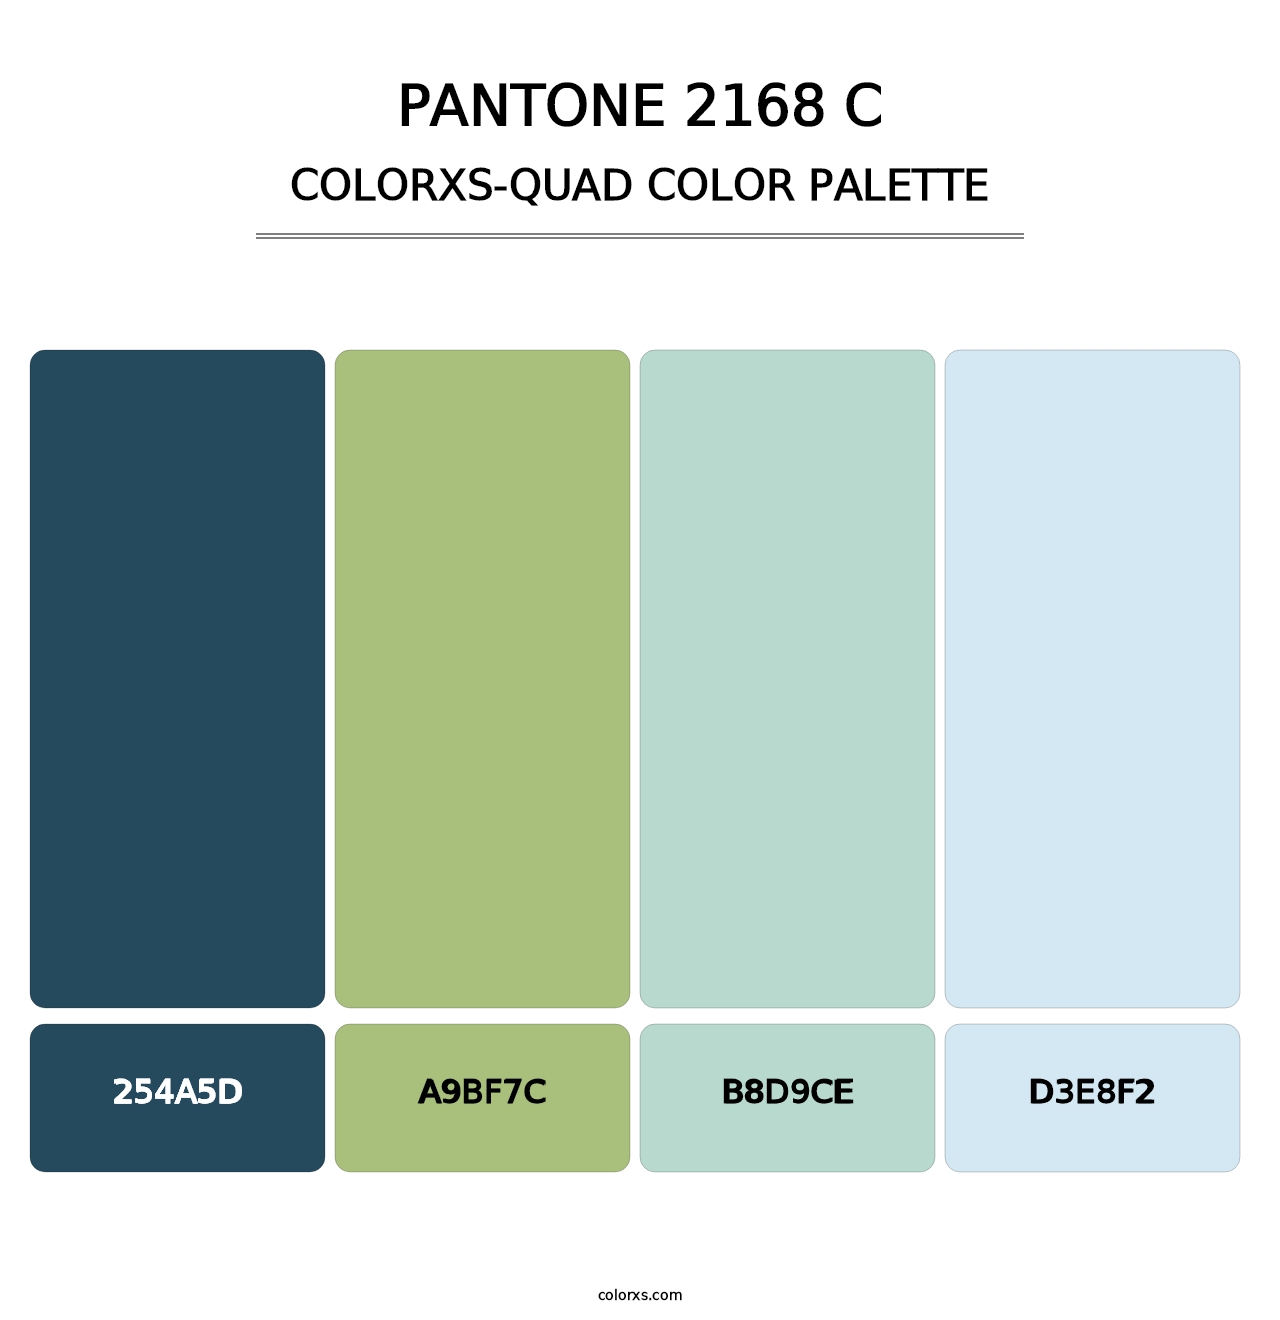 PANTONE 2168 C - Colorxs Quad Palette